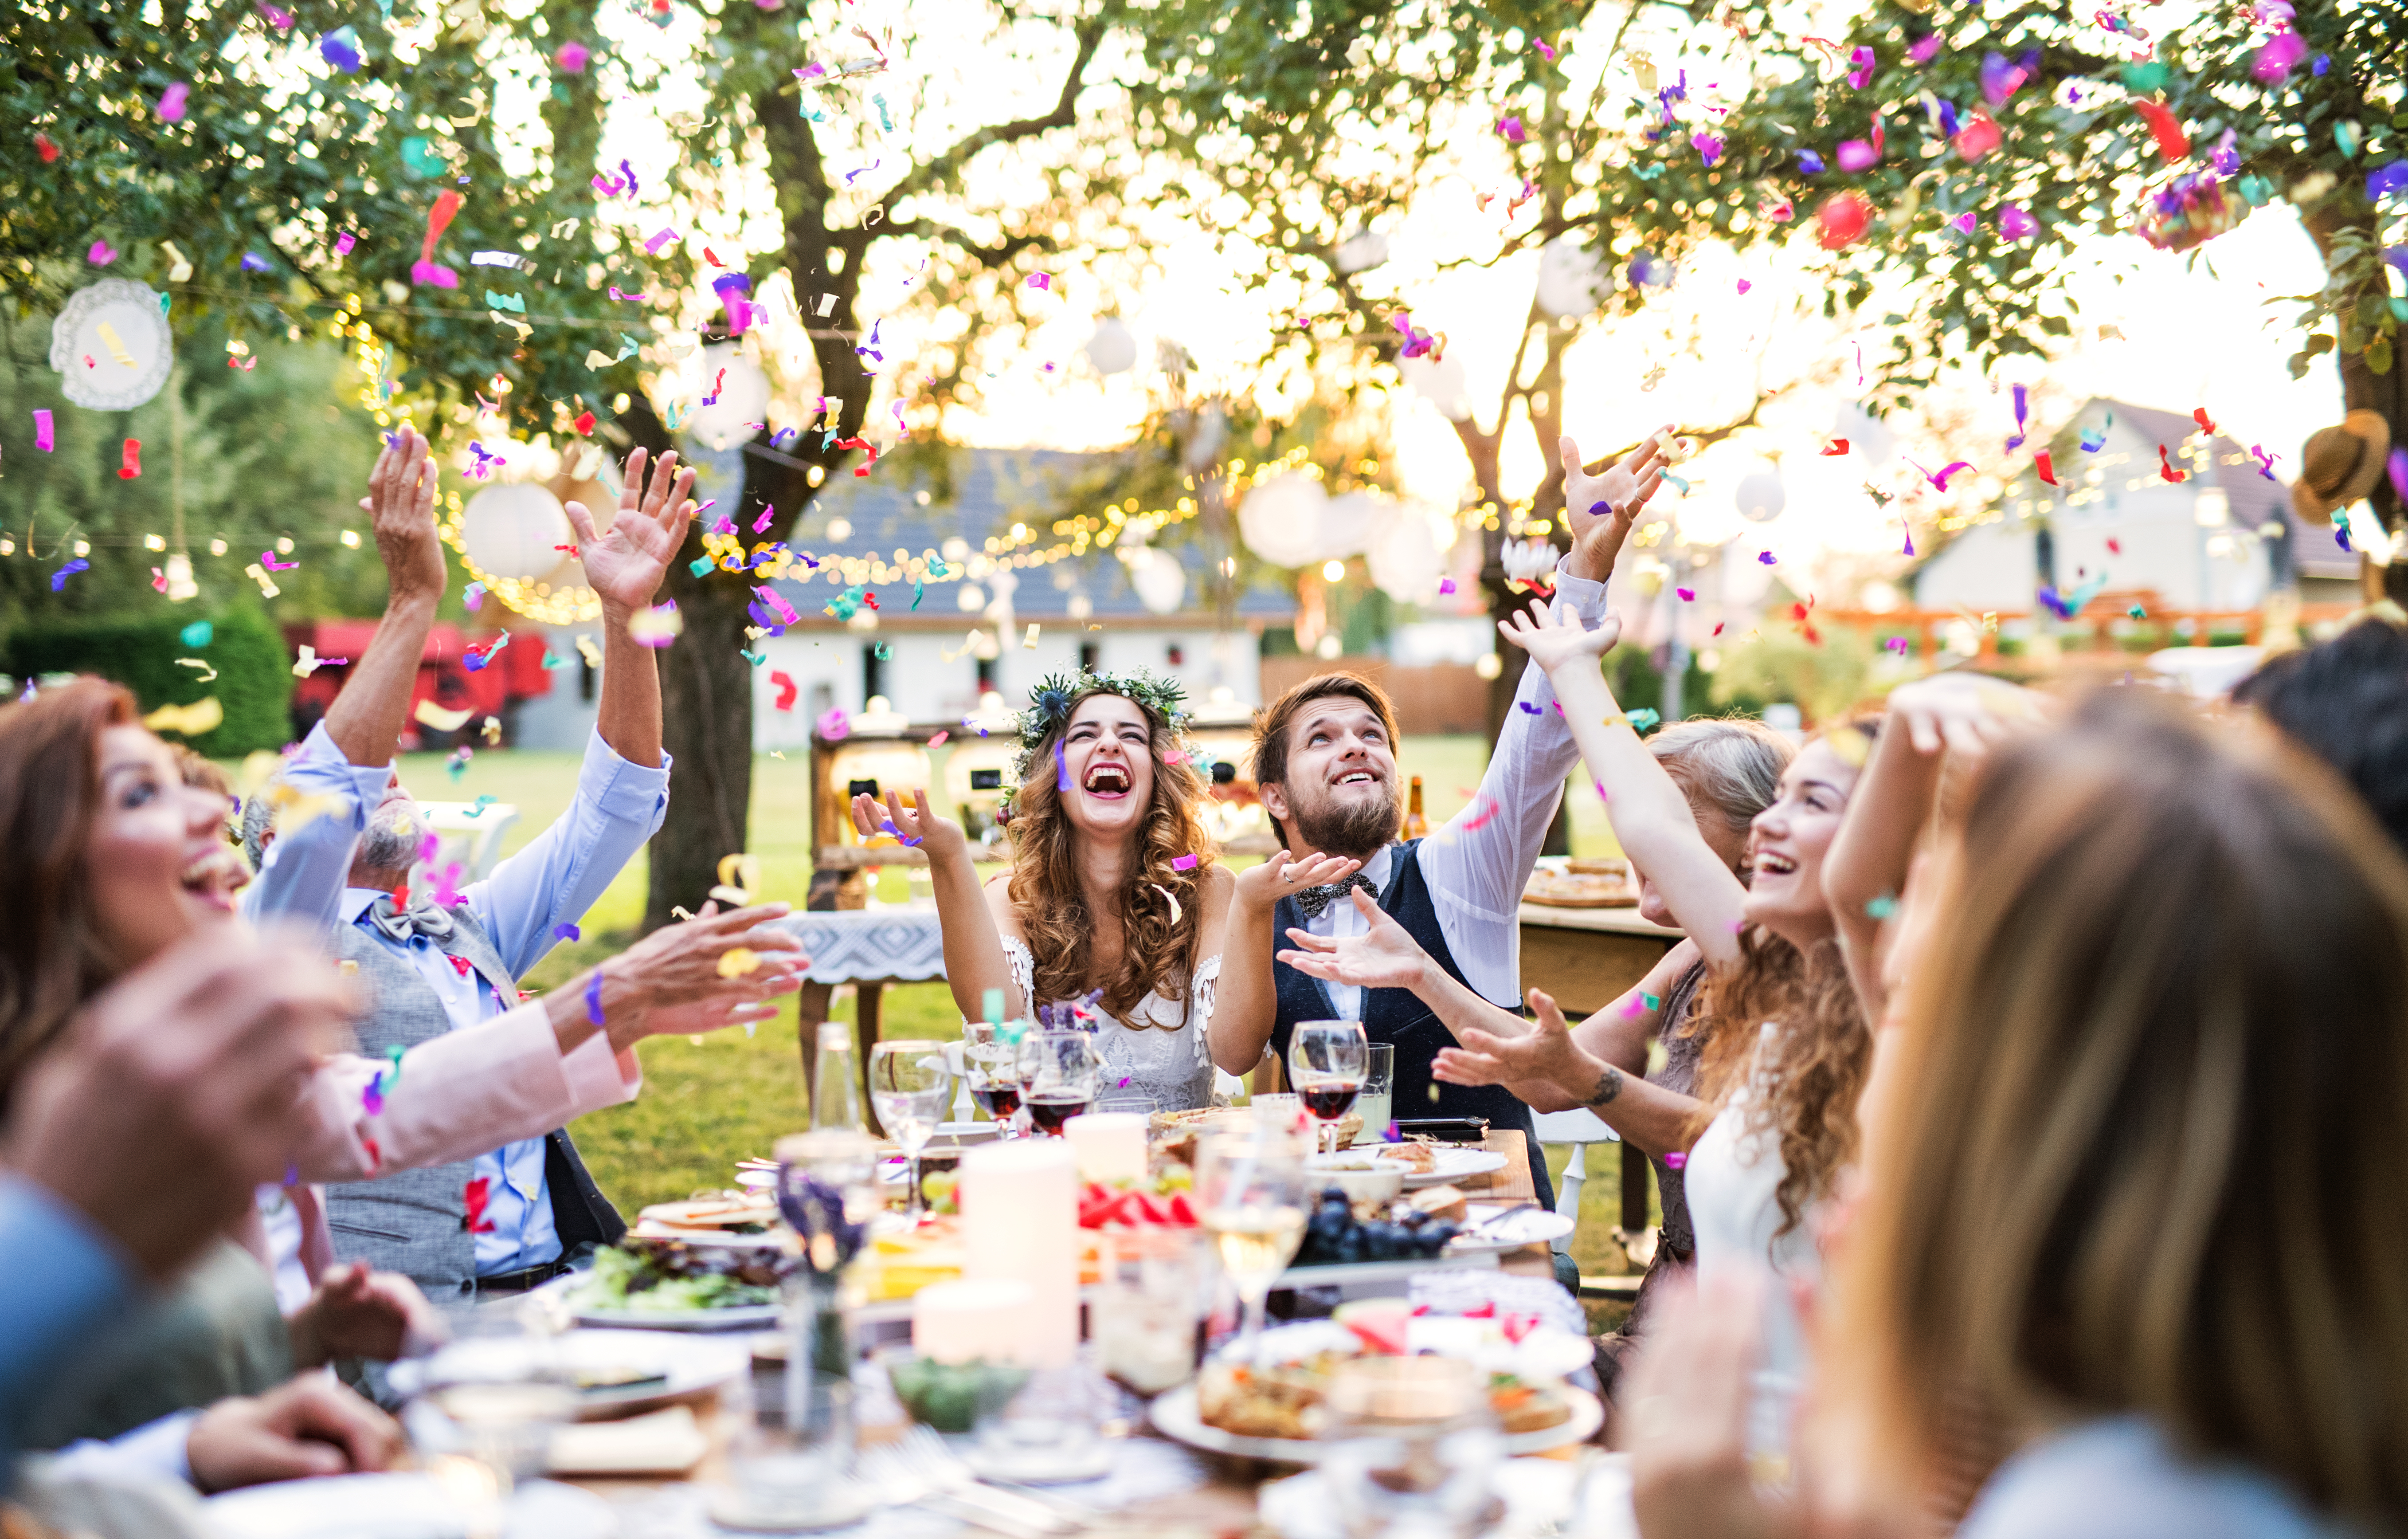 Recién casados y amigos en la recepción | Foto: Shutterstock